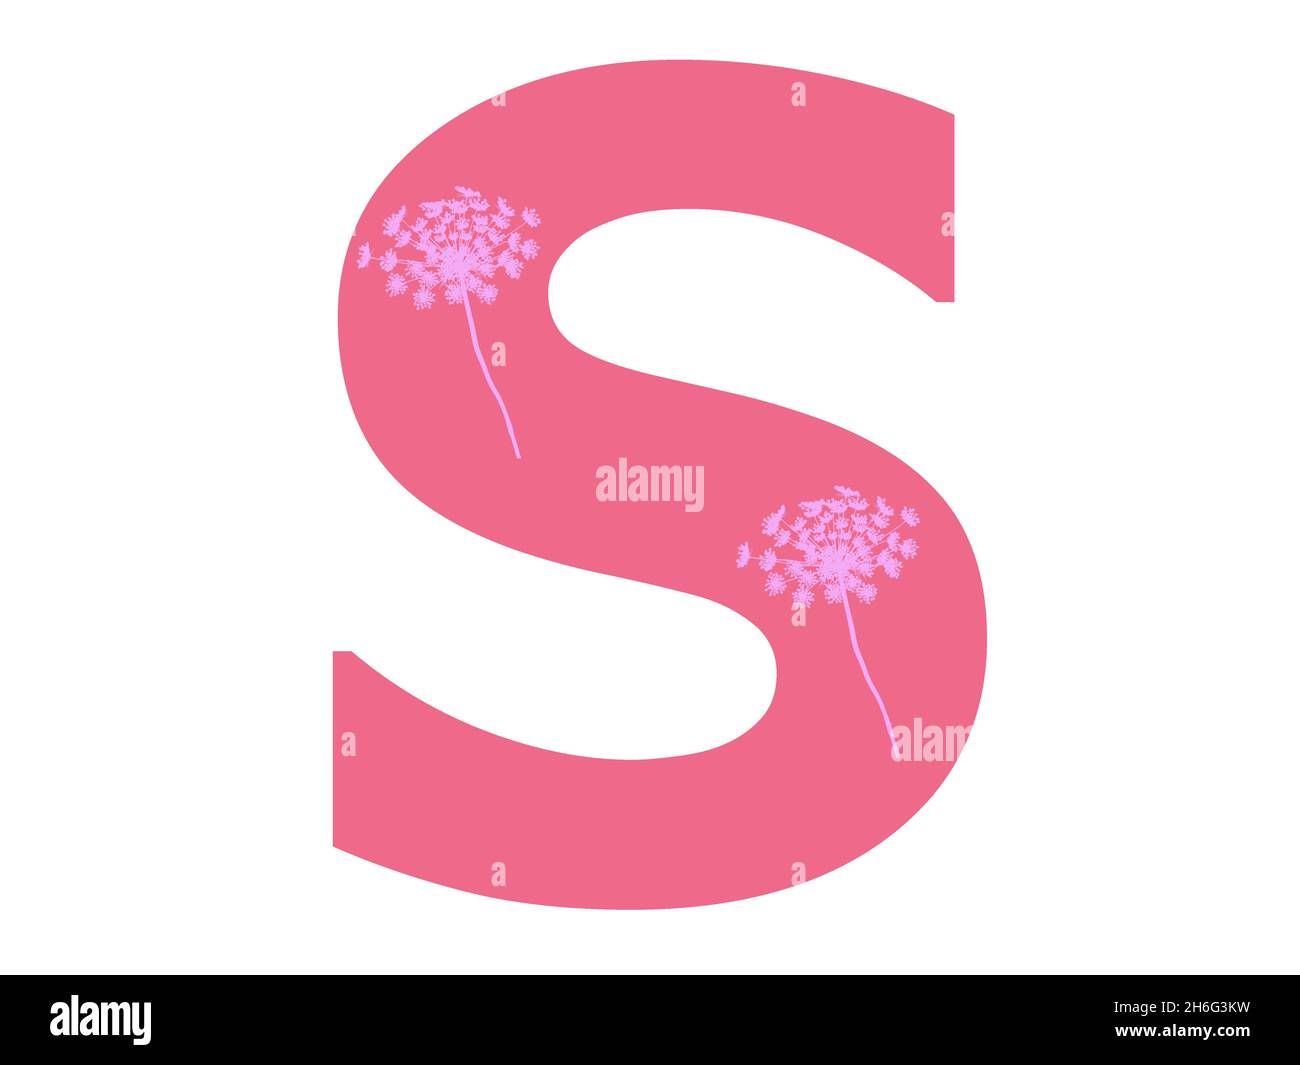 Lettera S dell'alfabeto realizzata con una silhouette di fiori rosa su sfondo rosa scuro, la lettera è isolata su sfondo bianco Foto Stock